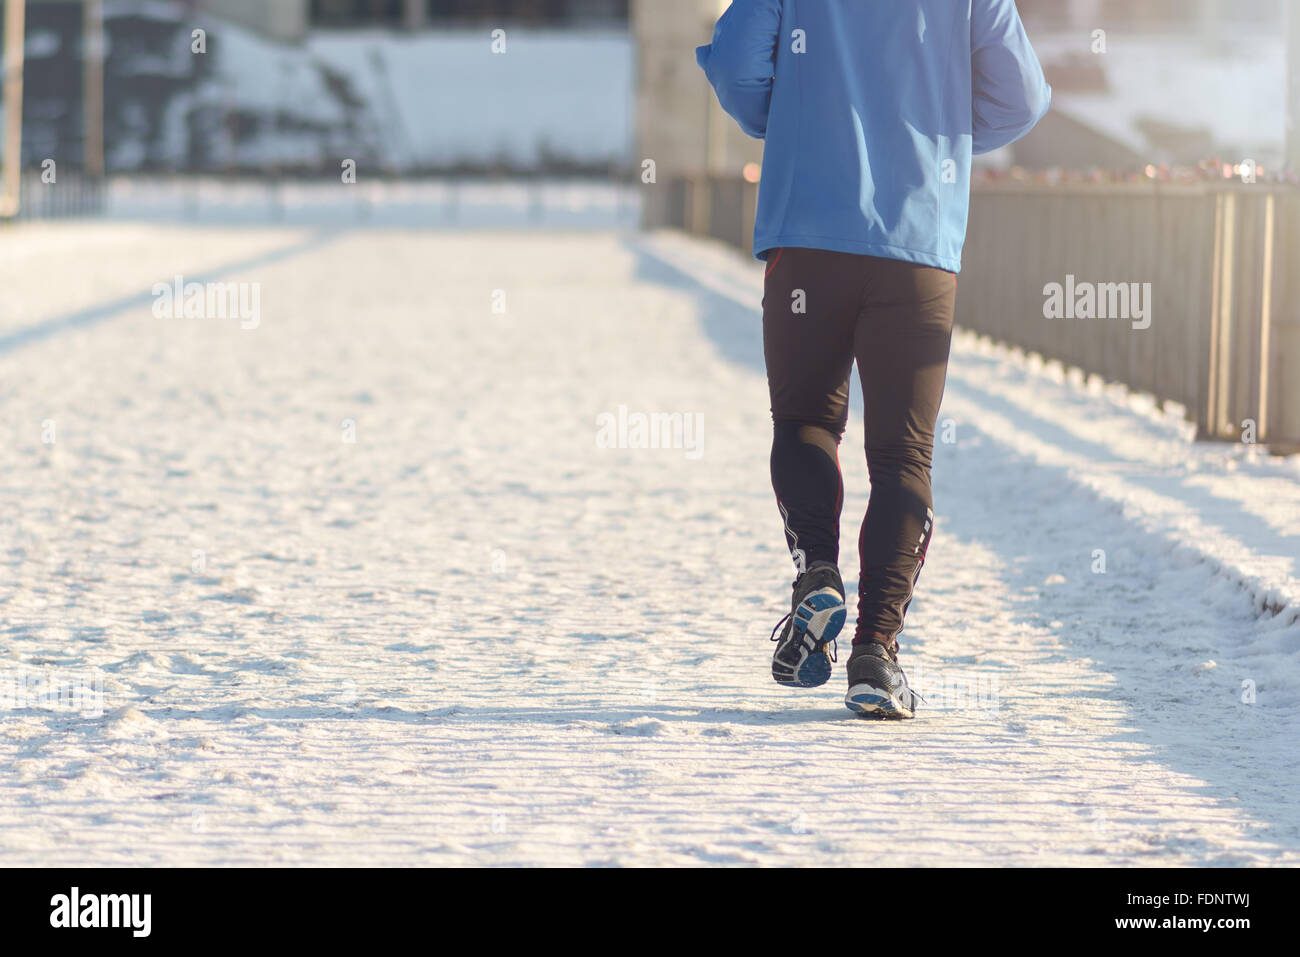 Vue arrière du middle-aged man jogging sur une promenade, dans un concept de vie active saine Banque D'Images